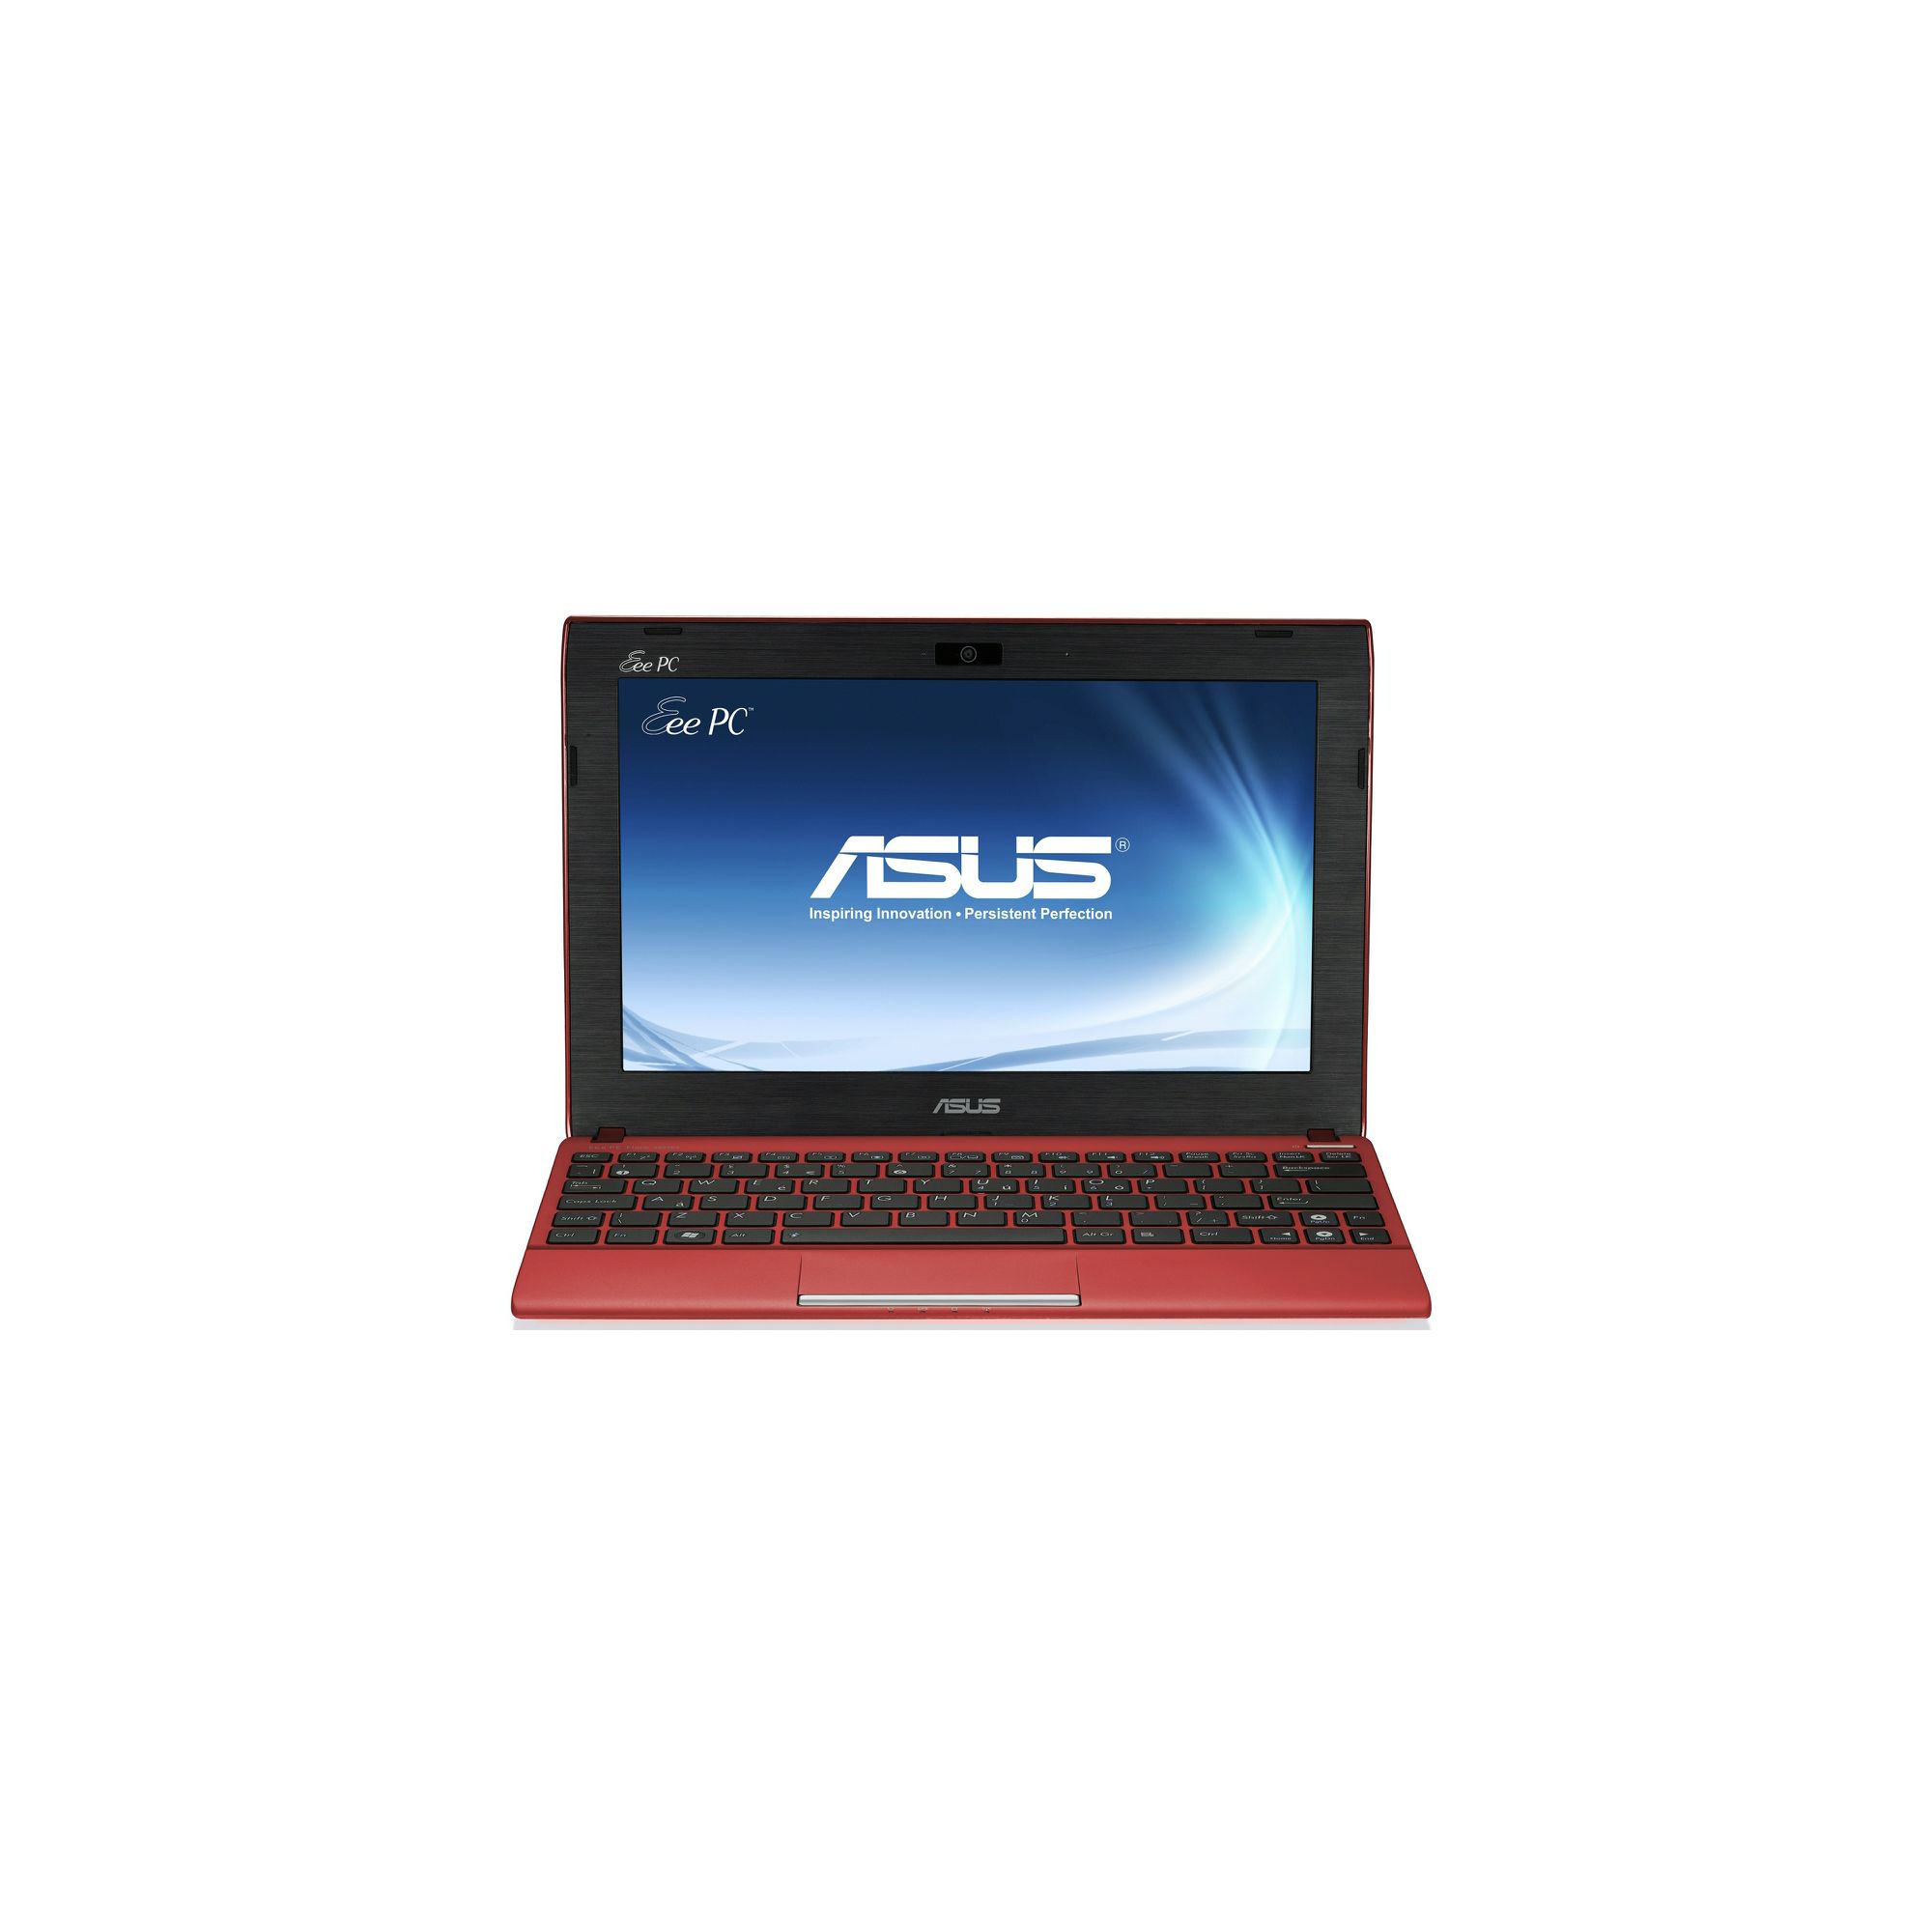 ASUS EeePC 1225B Windows 7 Netbook in Red